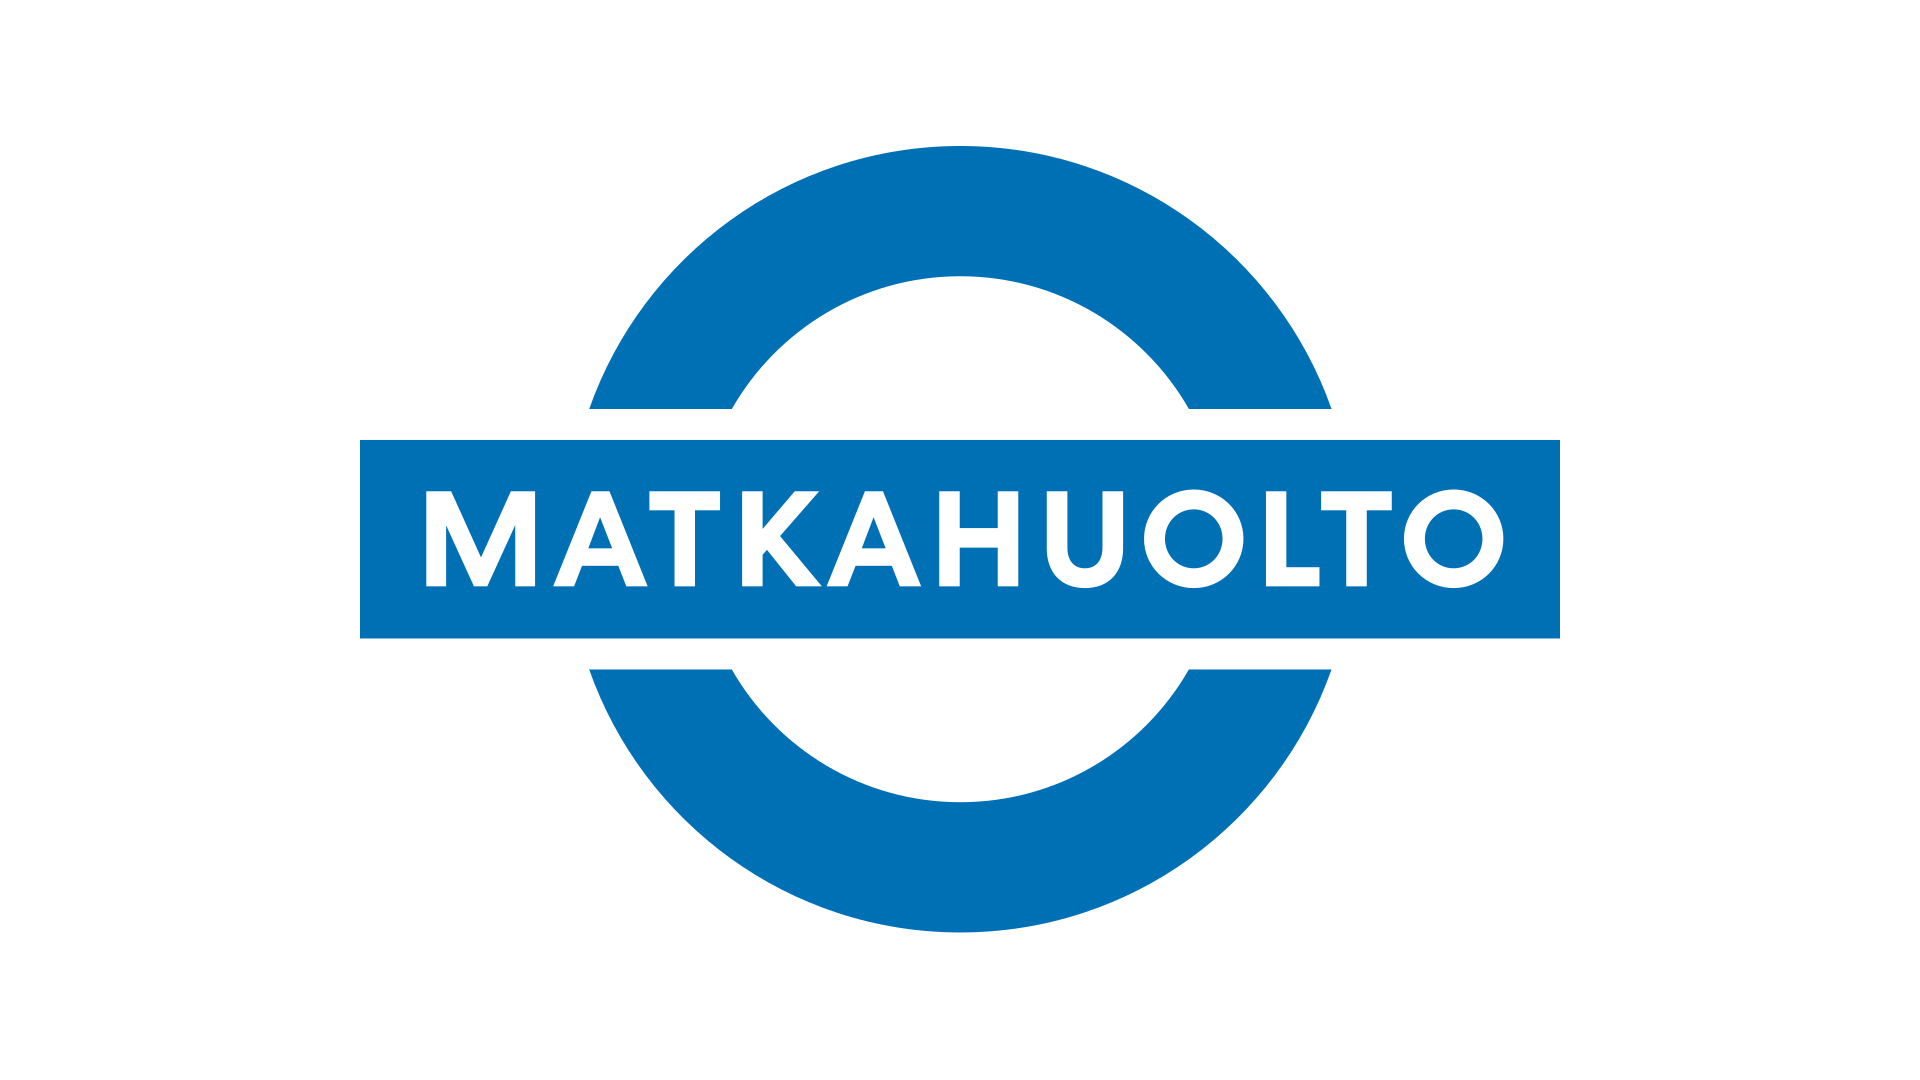 Matkahuollon logo